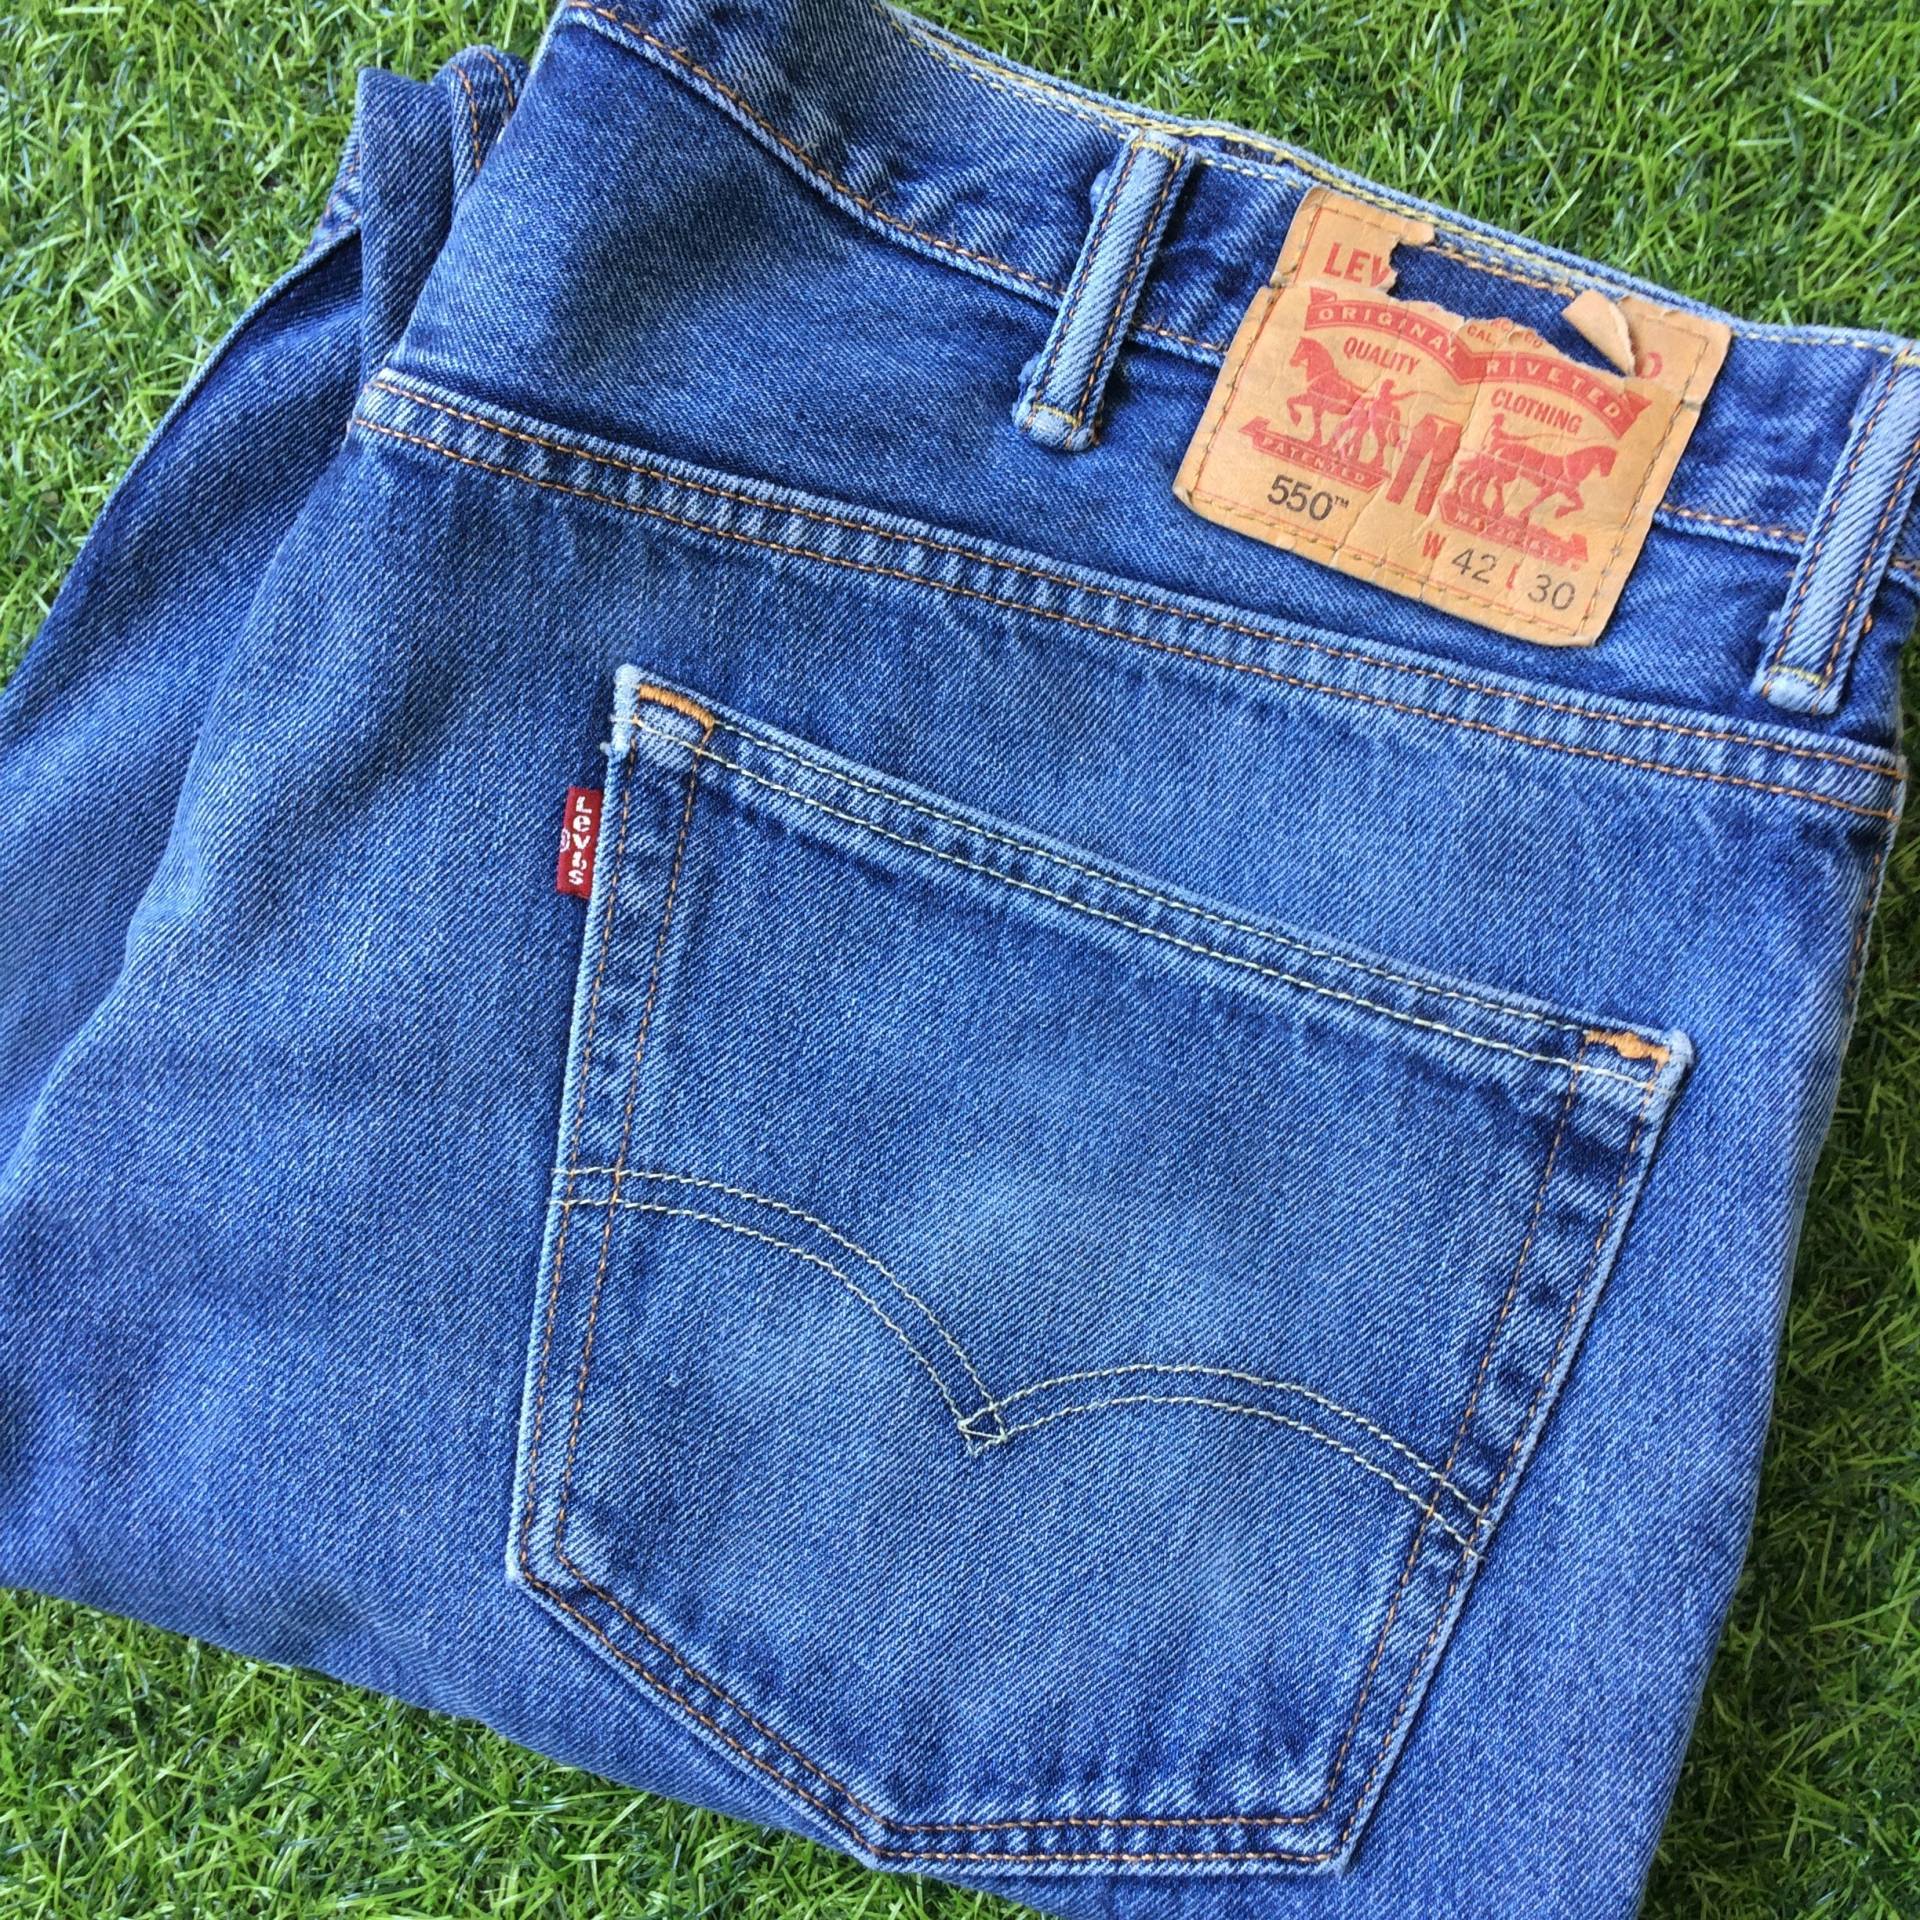 W43 L29 Vintage Distressed Levis 550 Jeans Medium Wash Denim Locker Fit Gerades Bein Big Plus Size Mom 43 X 29 von BackyardFashion